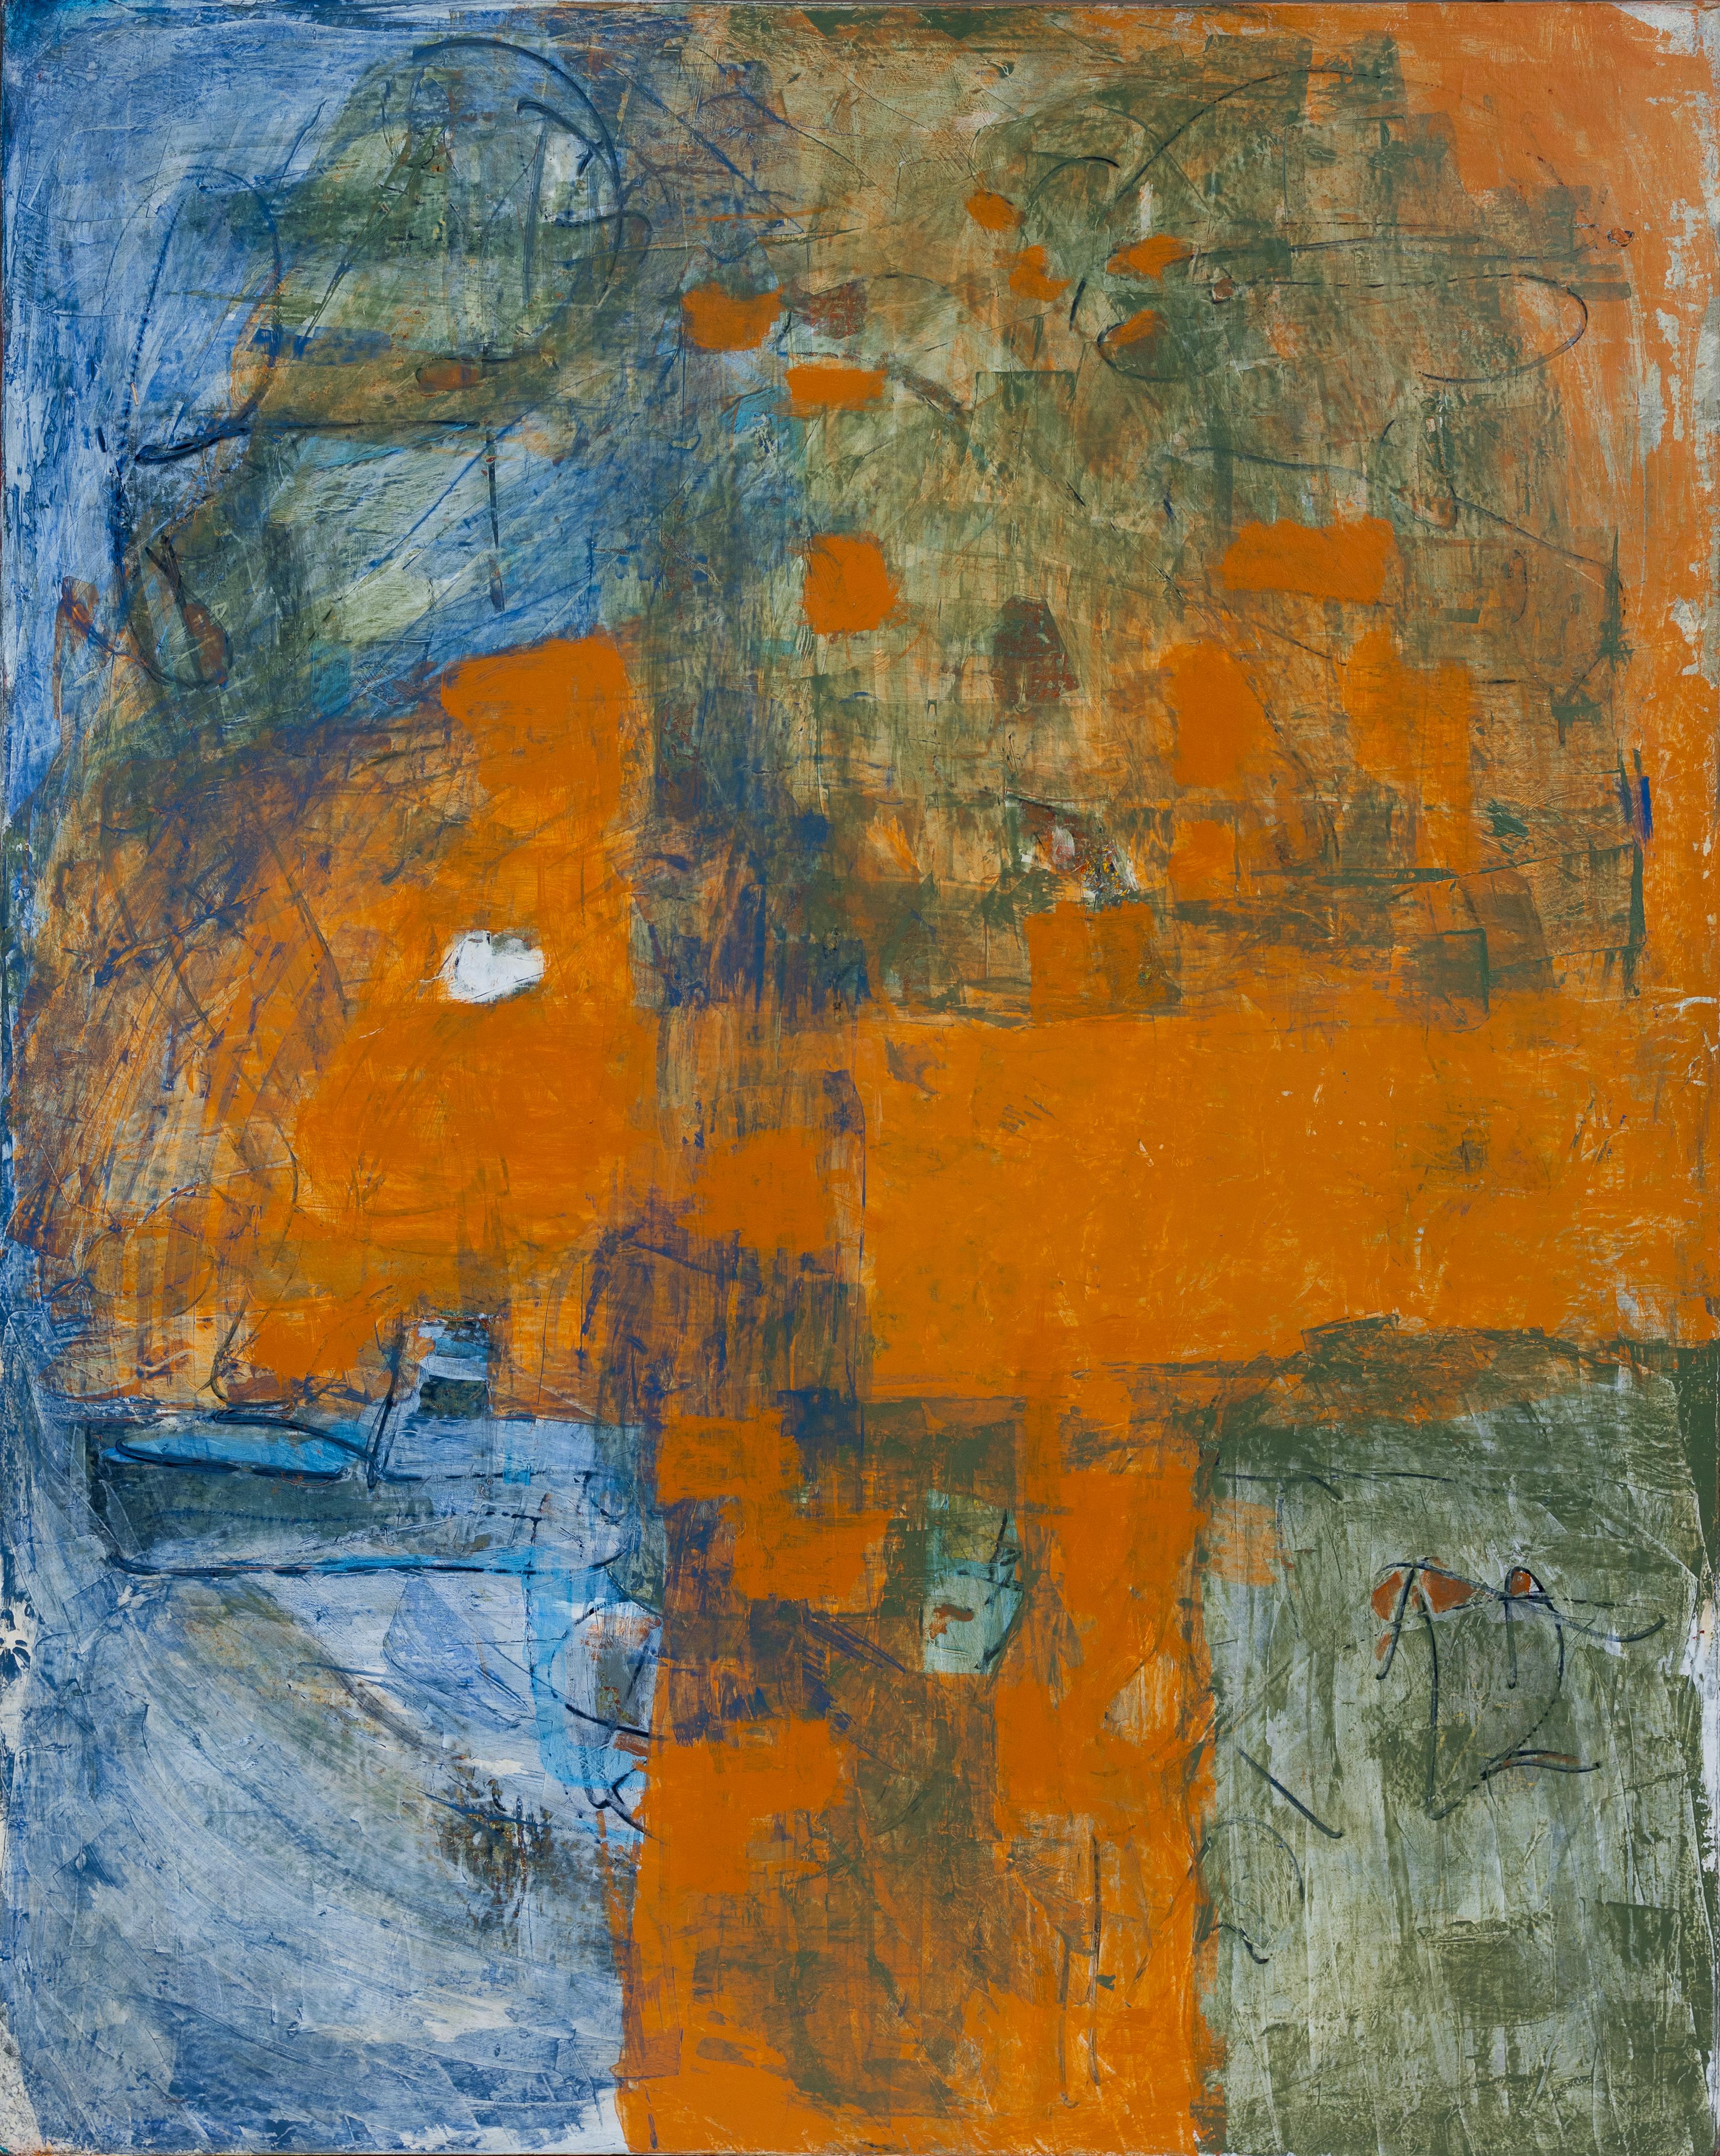 Abstract Painting Tom Reno - « Bleu et orange abstrait » - Grande peinture gestuelle de champ aux accents verts